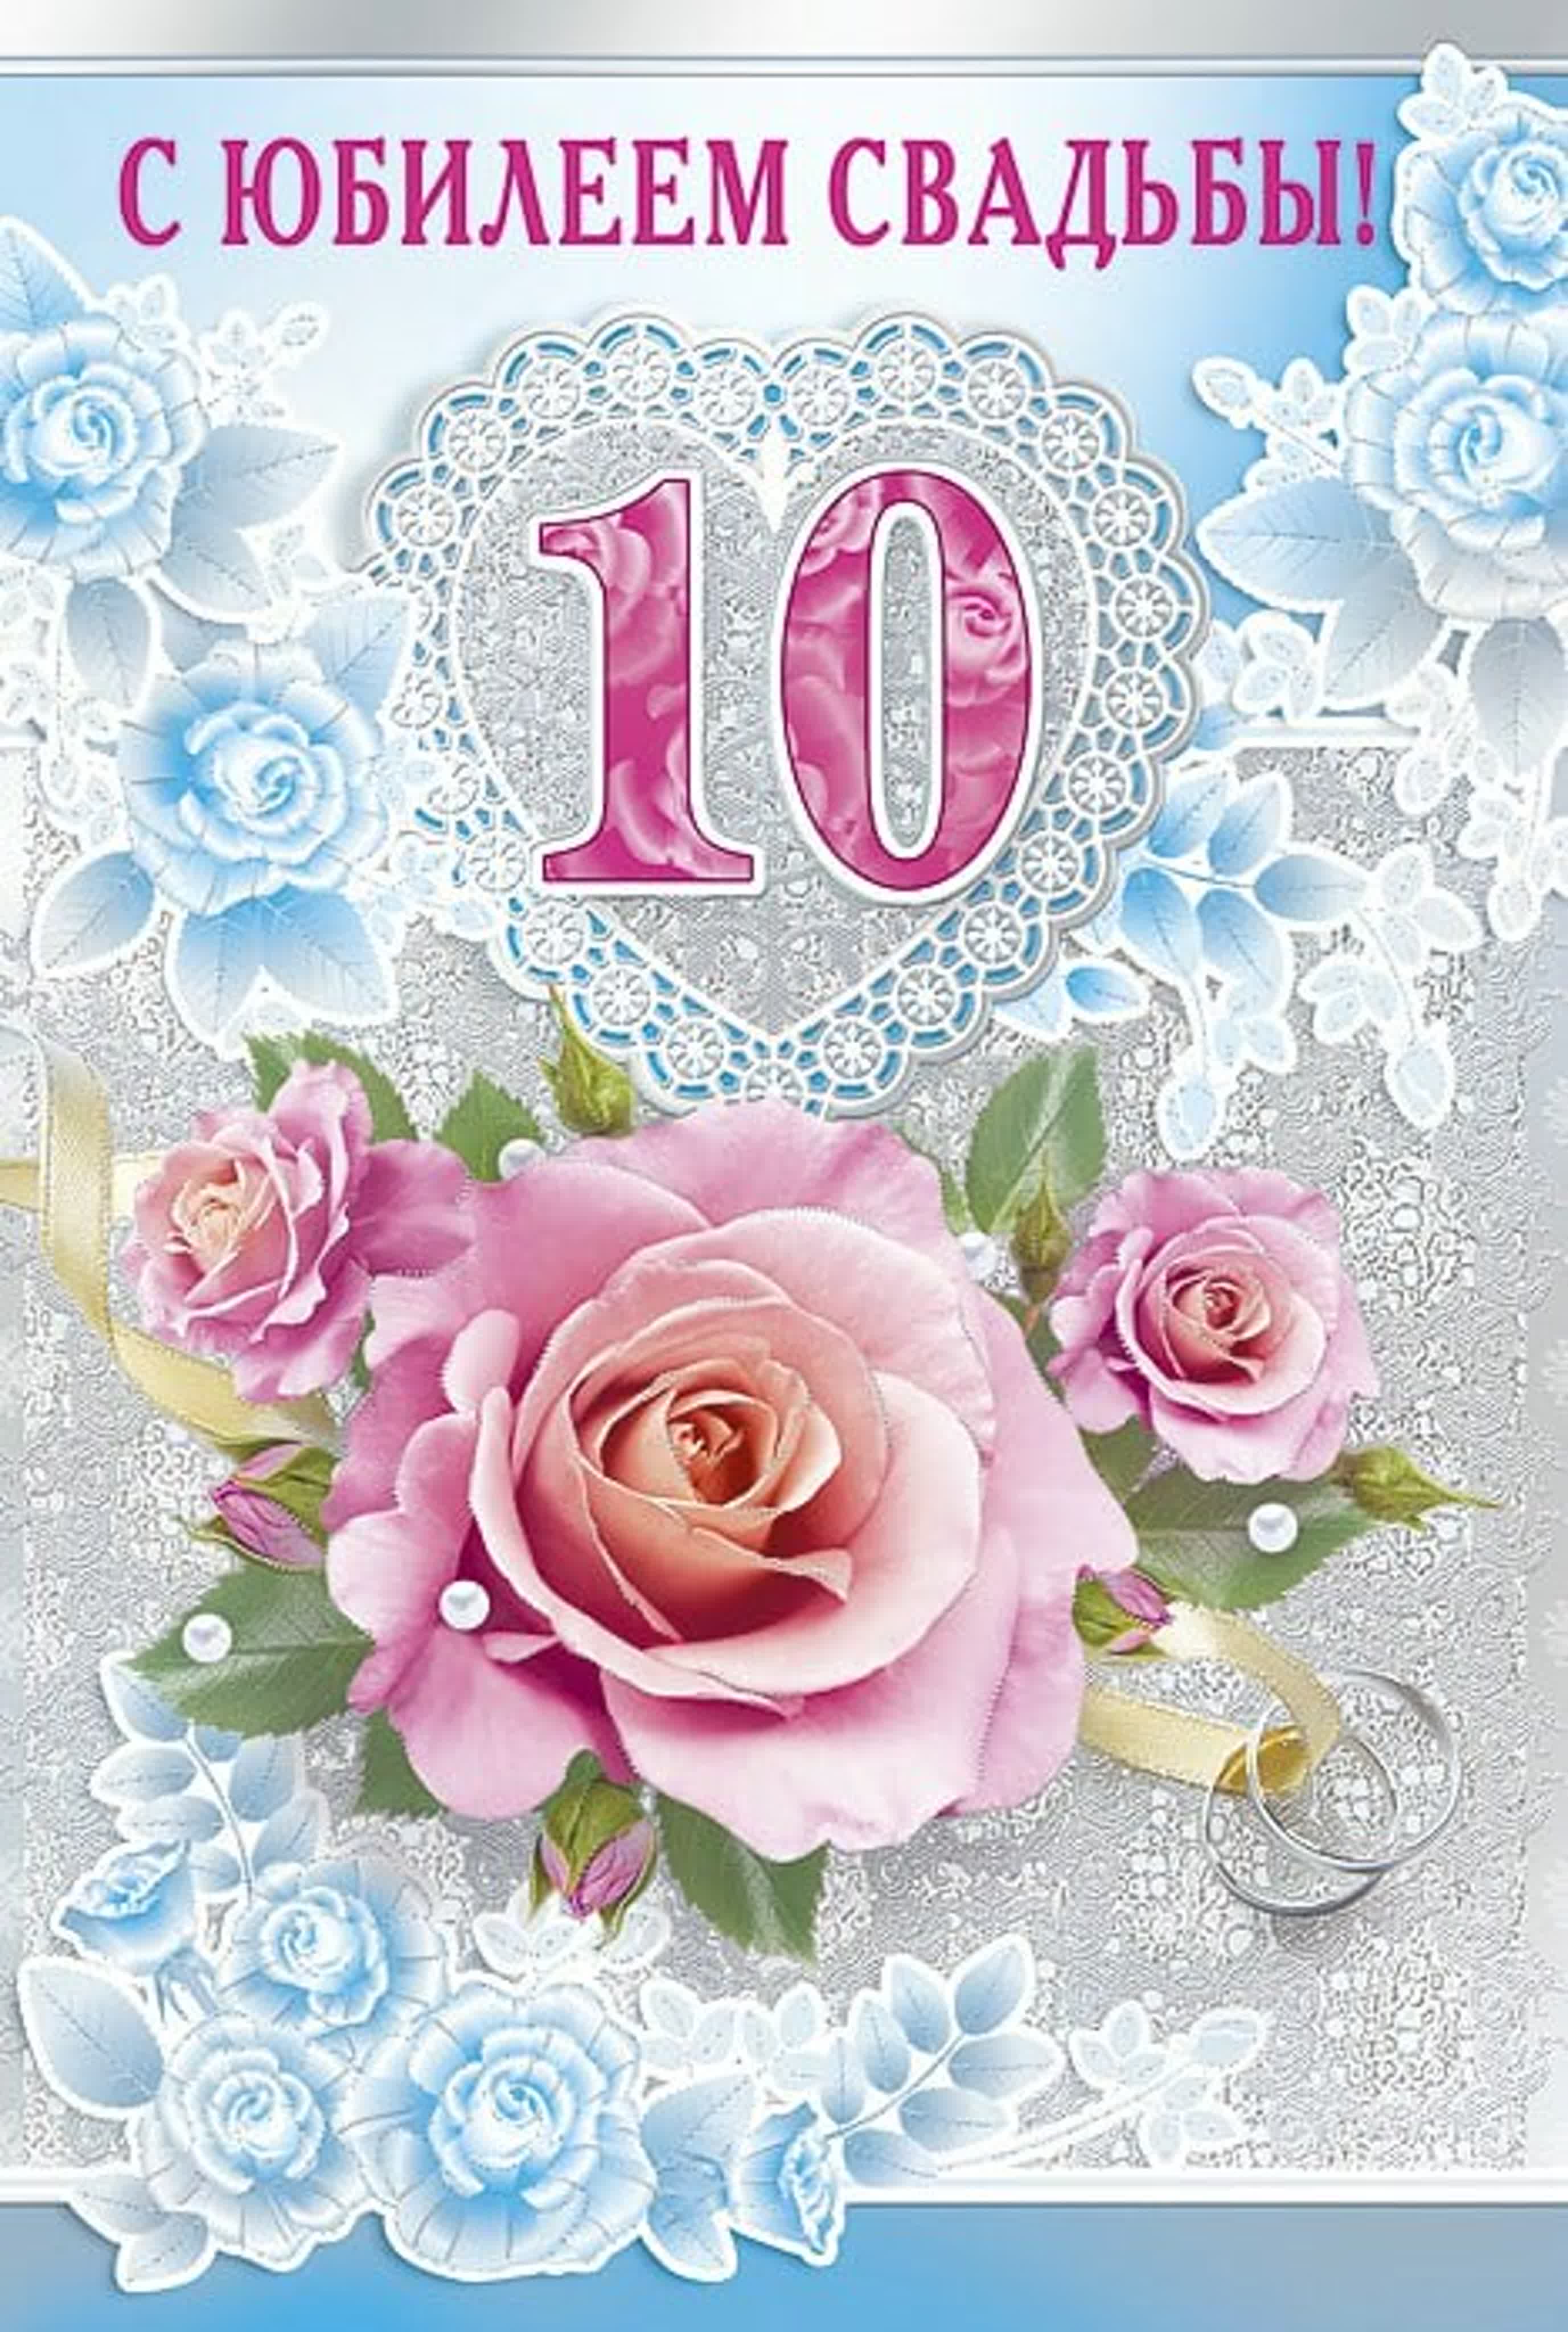 Картинки с годовщиной 10 лет. 10 Лет свадьбы. 10 Лет свадьбы поздравления. С юбилеем свадьбы 10 лет. Розовая свадьба.